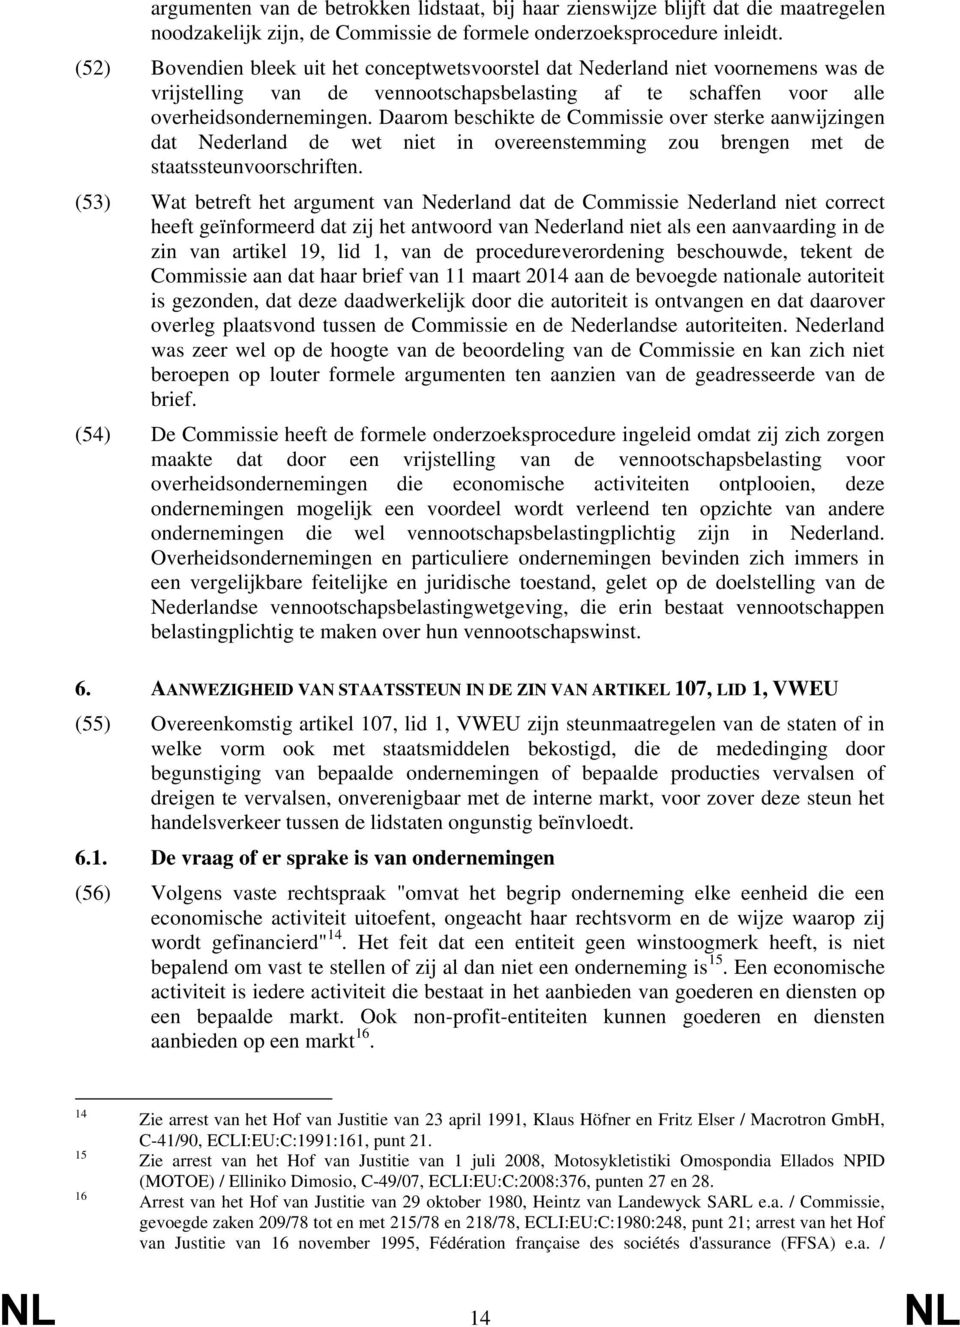 Daarom beschikte de Commissie over sterke aanwijzingen dat Nederland de wet niet in overeenstemming zou brengen met de staatssteunvoorschriften.